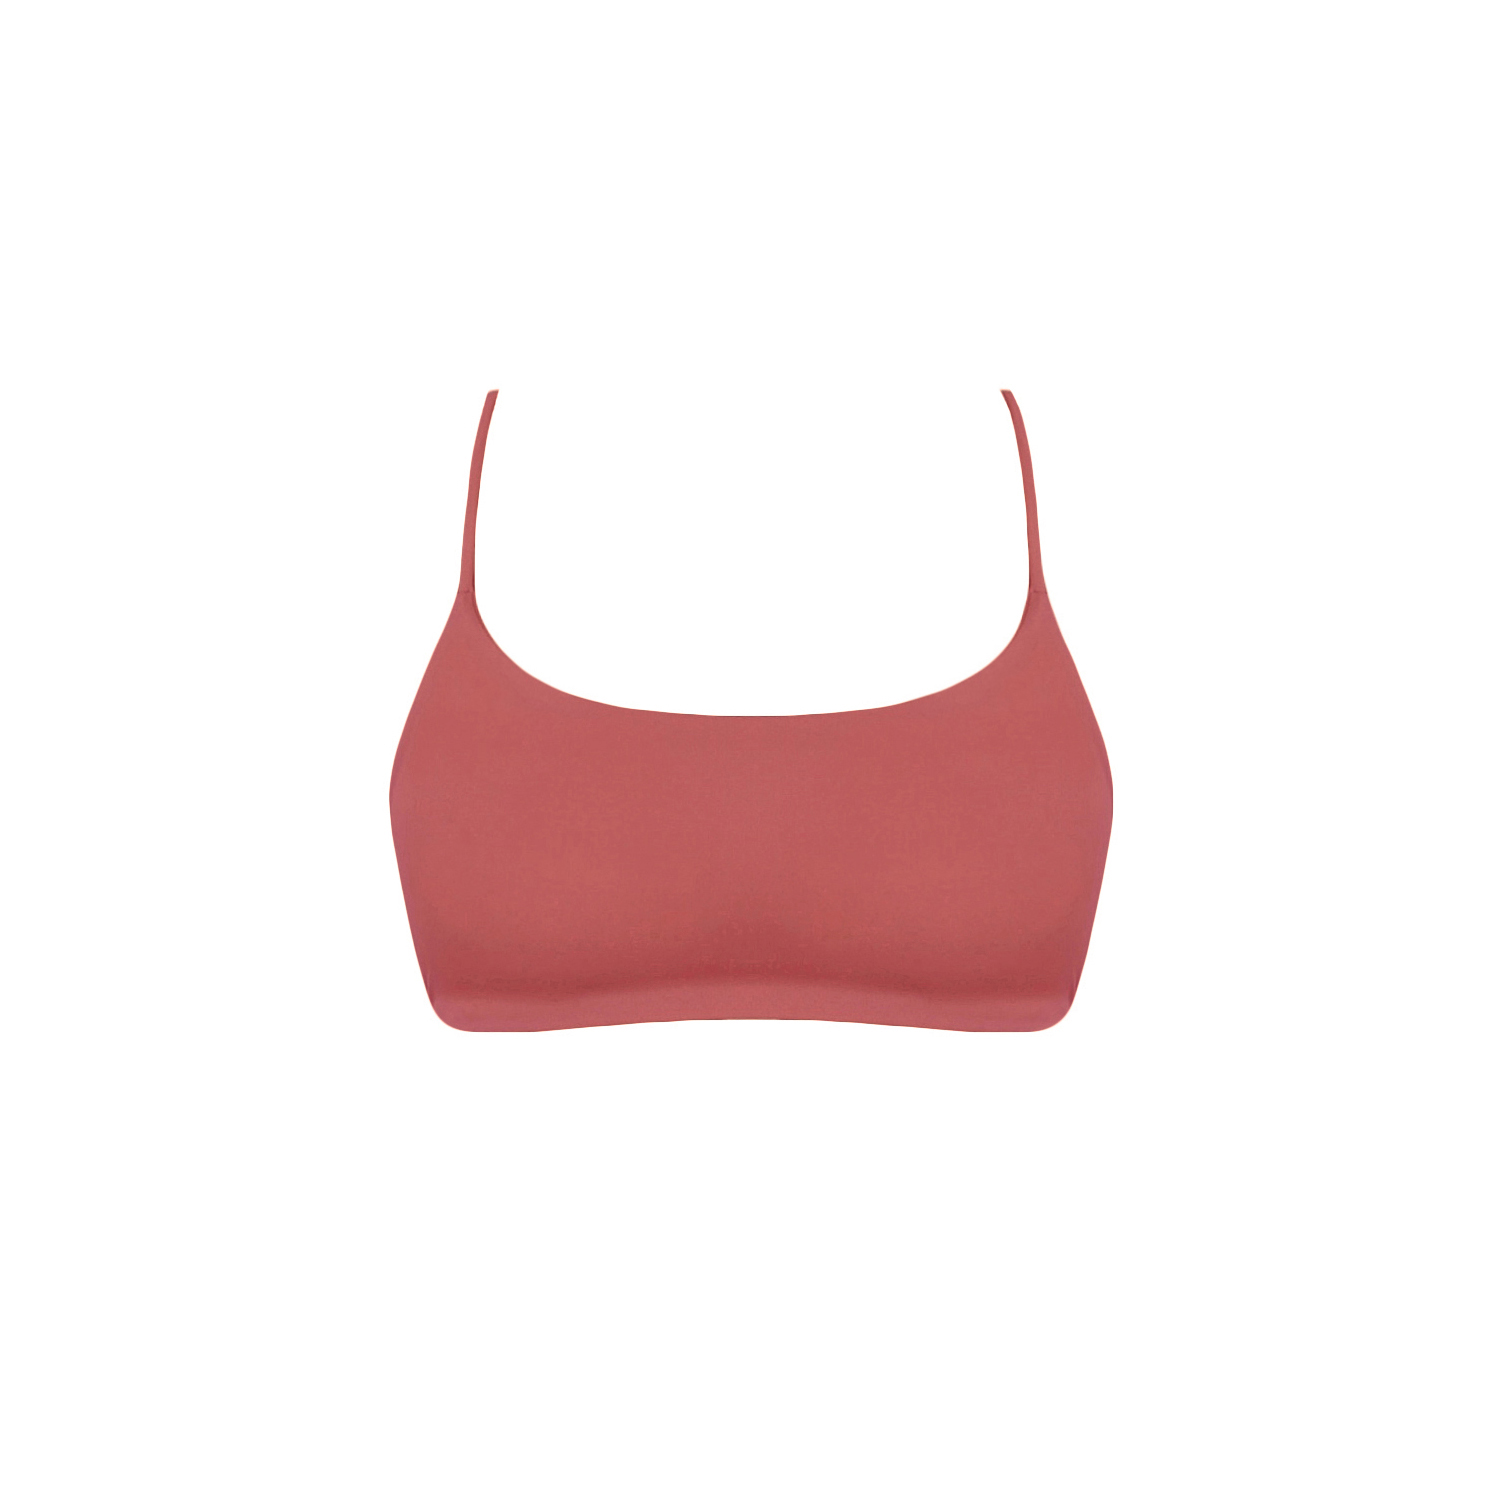 acaia-top-bikini-tied-góra-cherry różowy wiśniowy -długie-paseczki-sznureczki-kokardki-bikini-acaia- polska marka swimwer bikini top bottom brazilian cherry pink